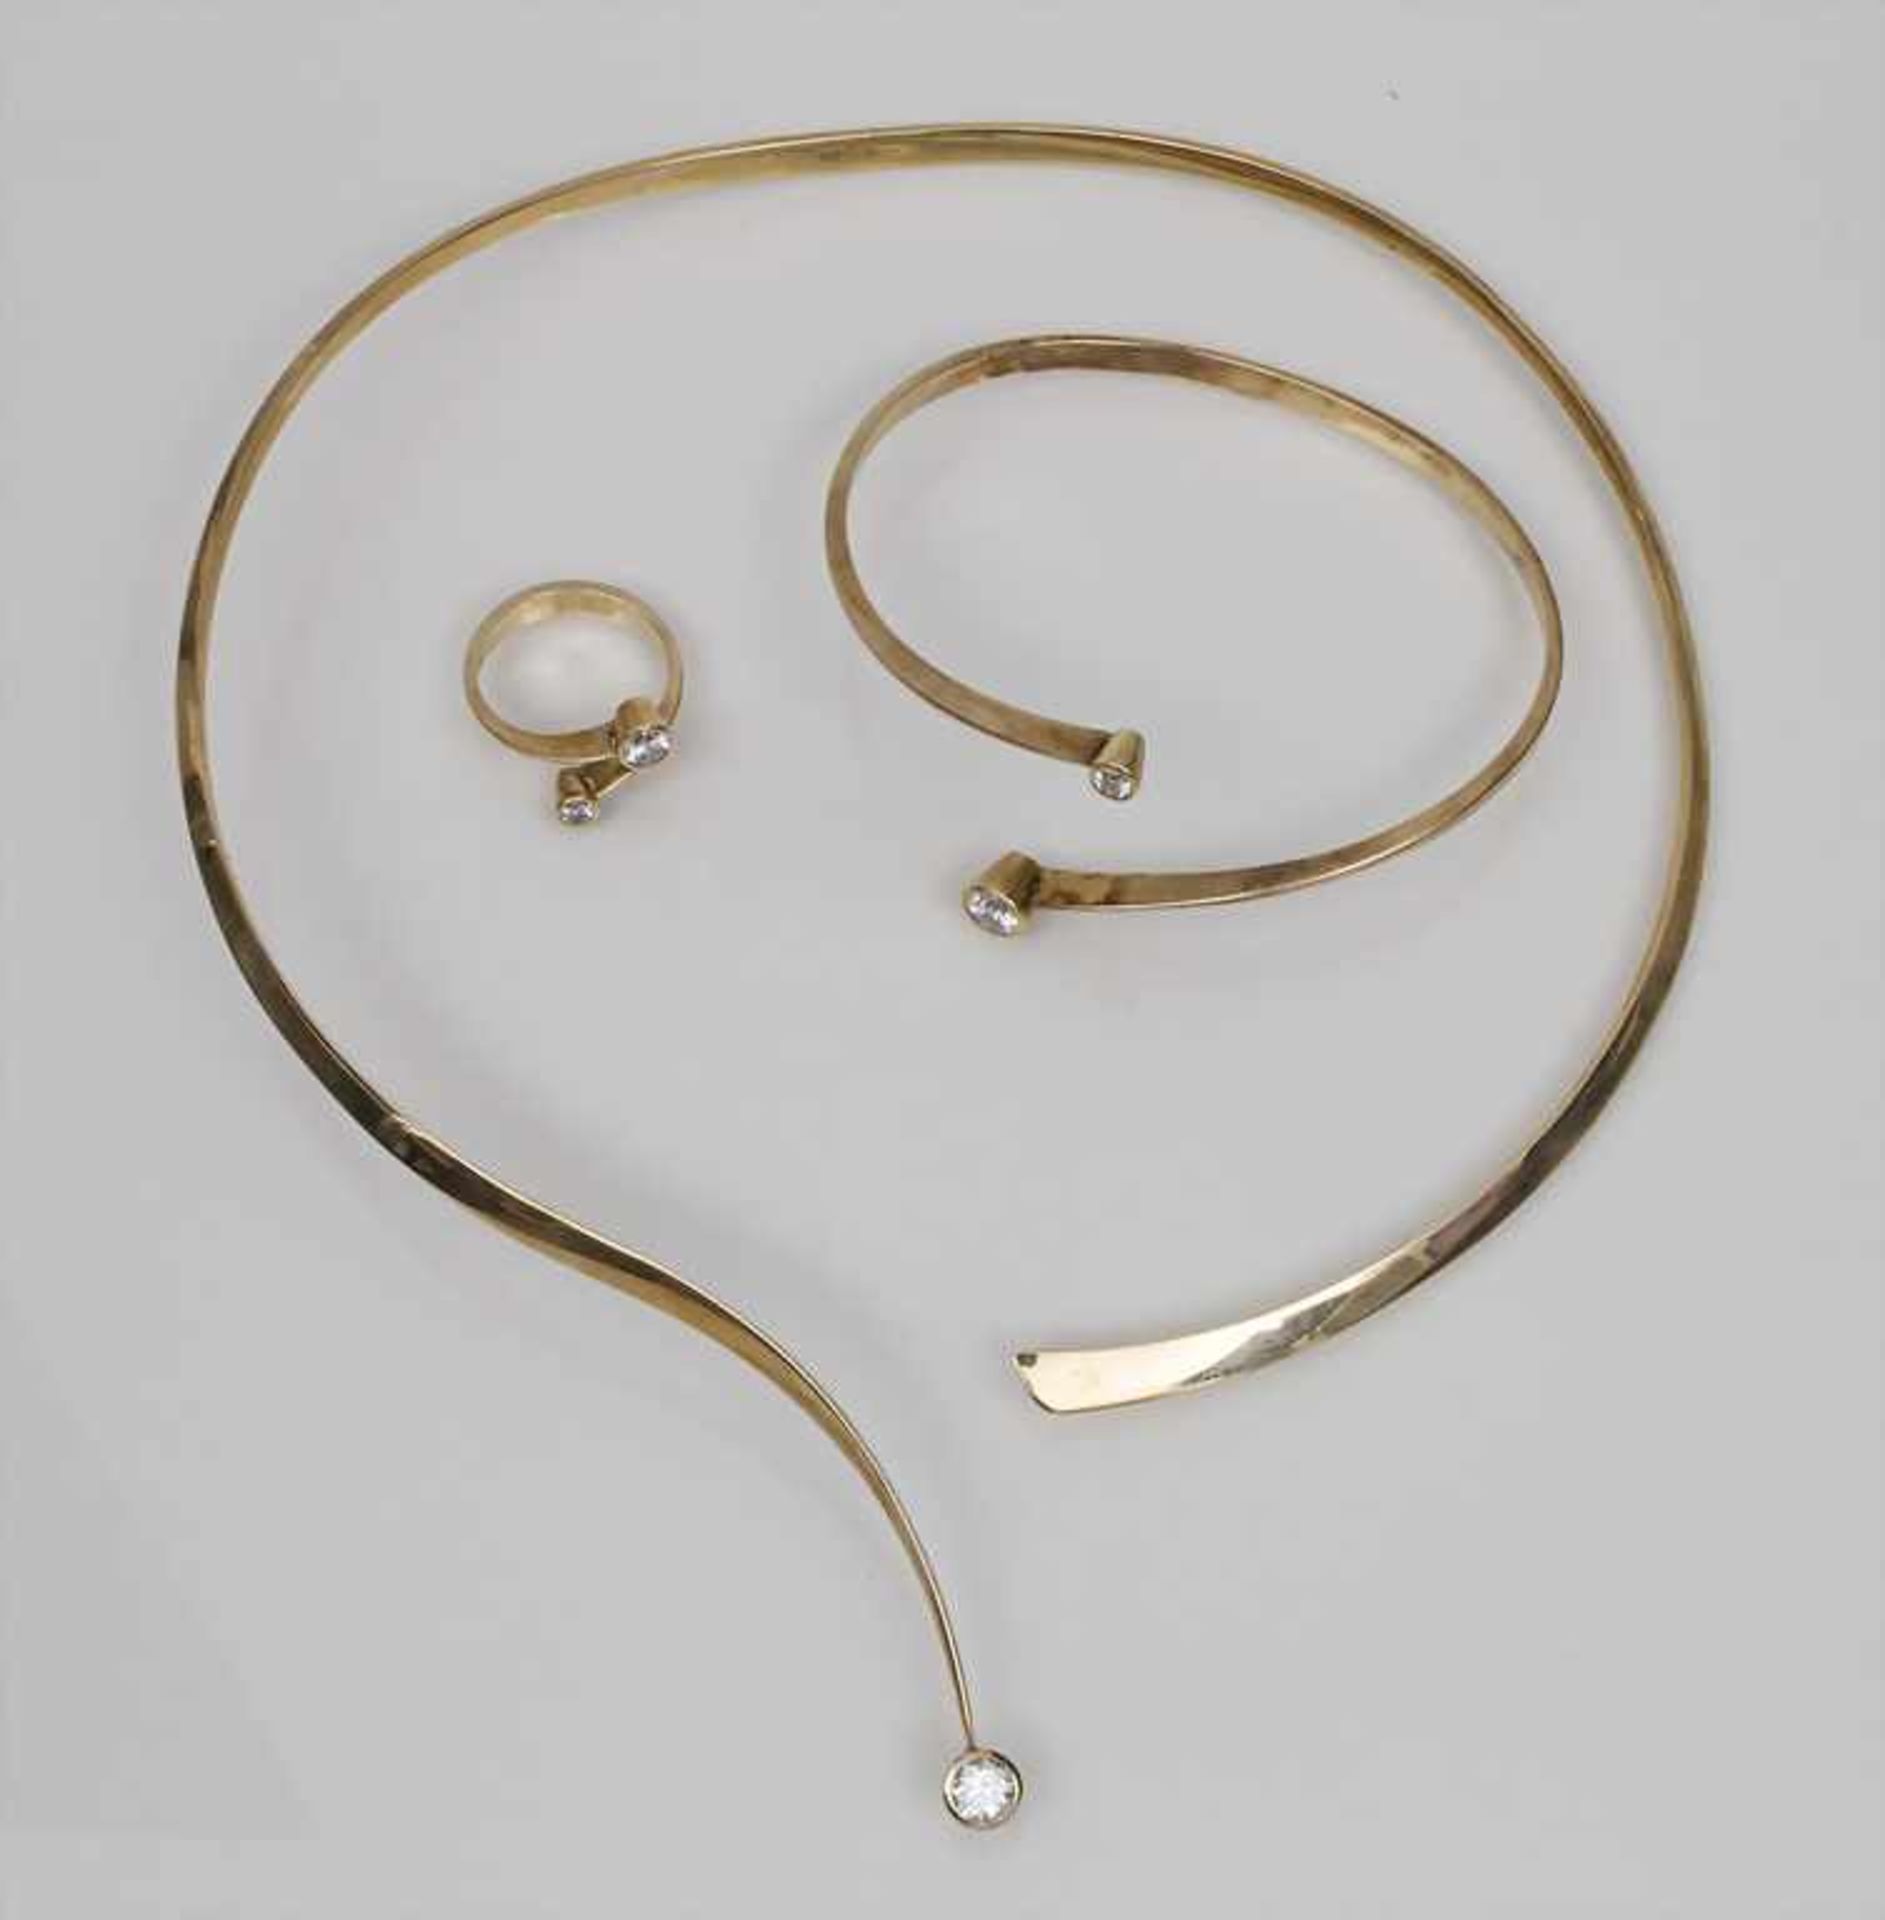 Schmuck-Set mit Brillant / A Jewellery Set with Brilliant bestehend aus Halsreif, Armreif und Ring,